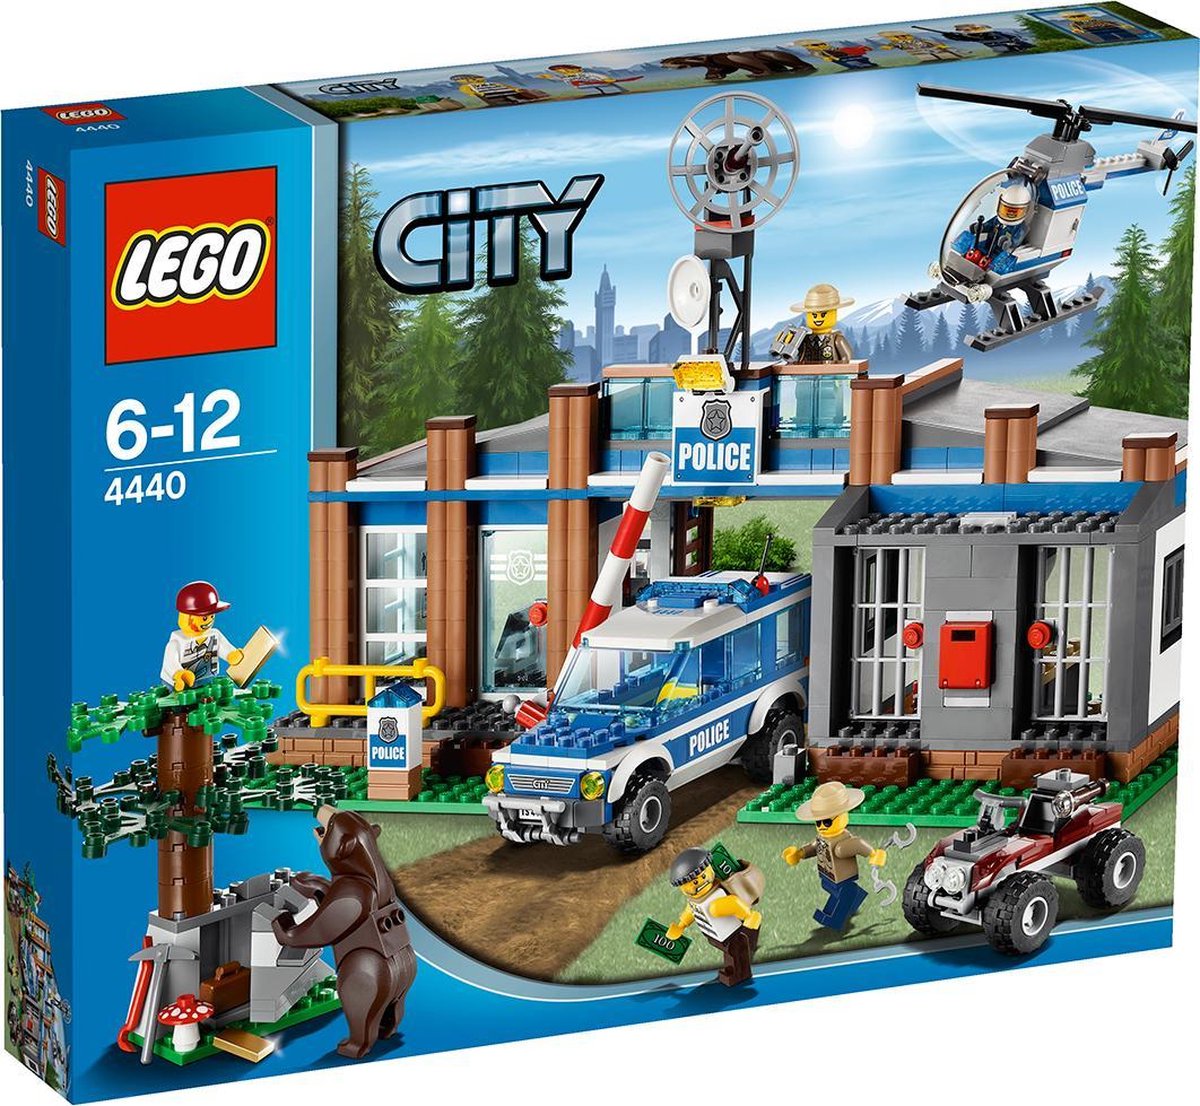 LEGO City Bospolitiebureau - 4440 | bol.com